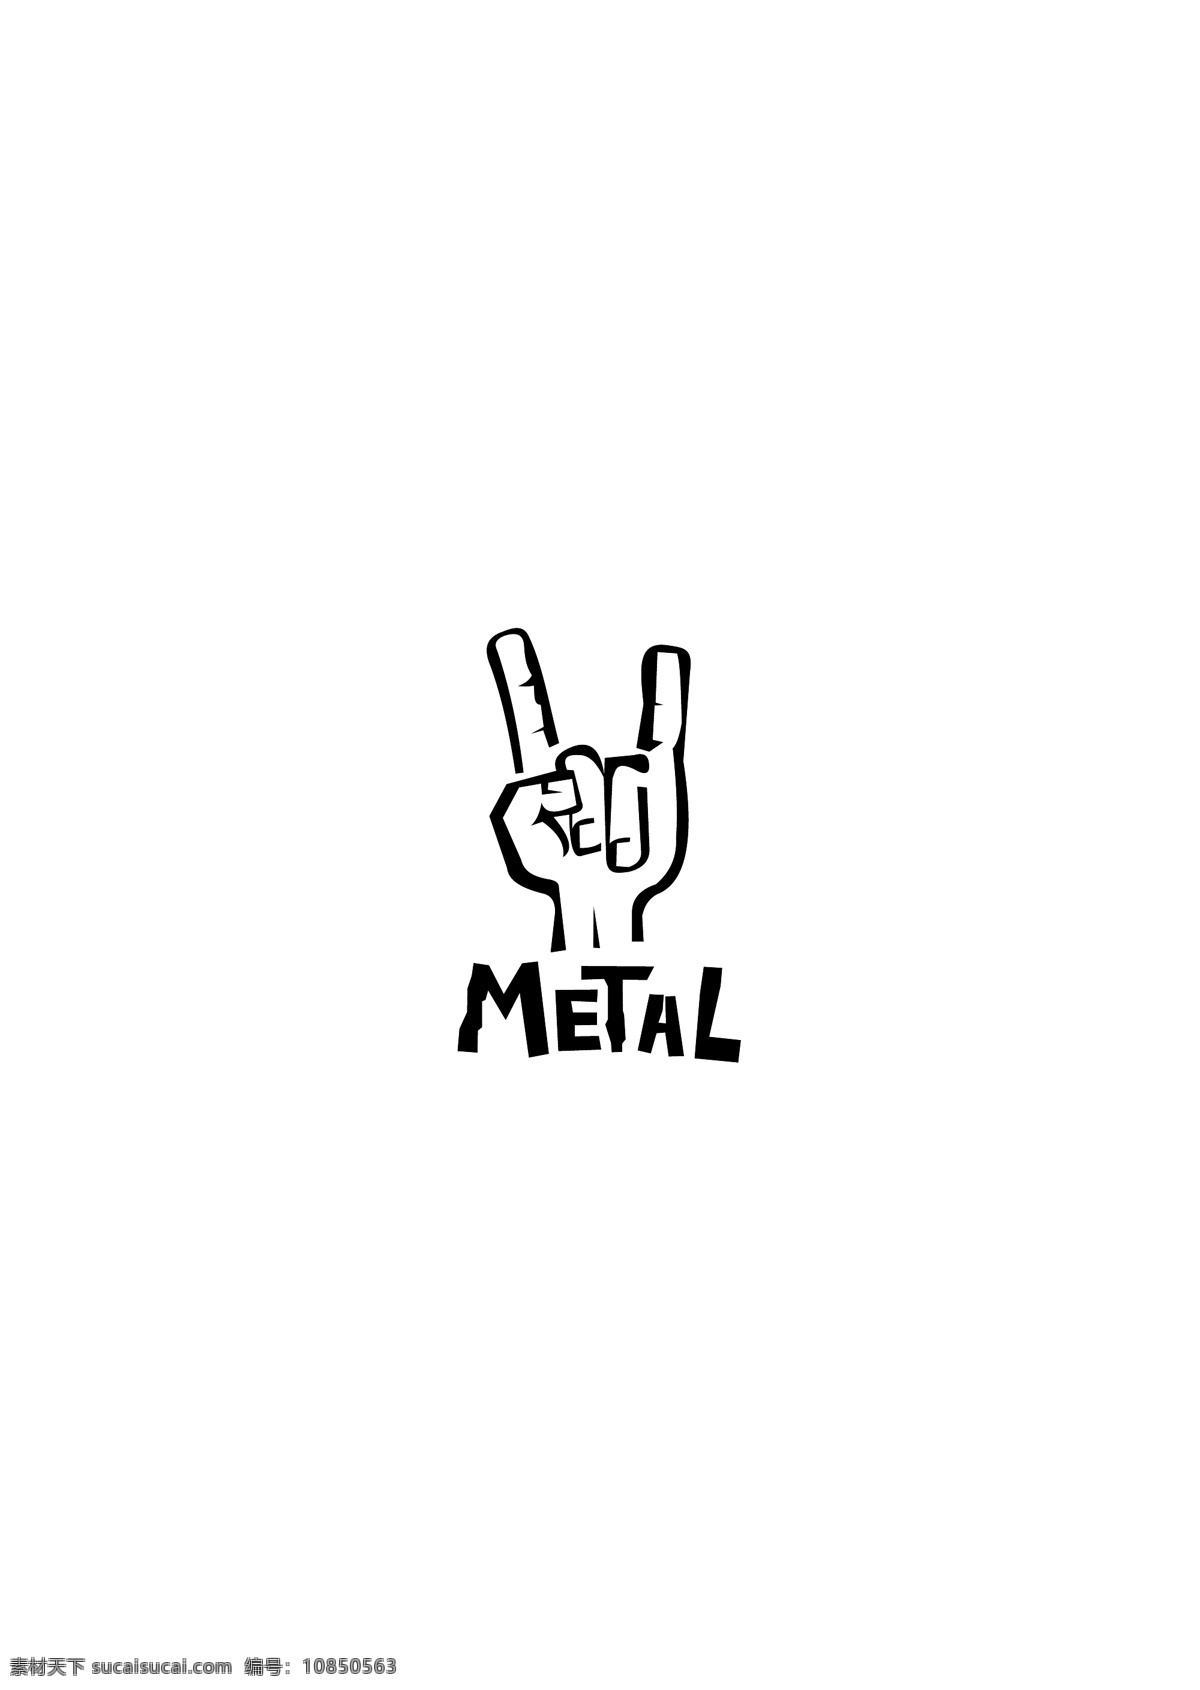 metal logo大全 logo 设计欣赏 商业矢量 矢量下载 唱片 专辑 标志设计 欣赏 网页矢量 矢量图 其他矢量图